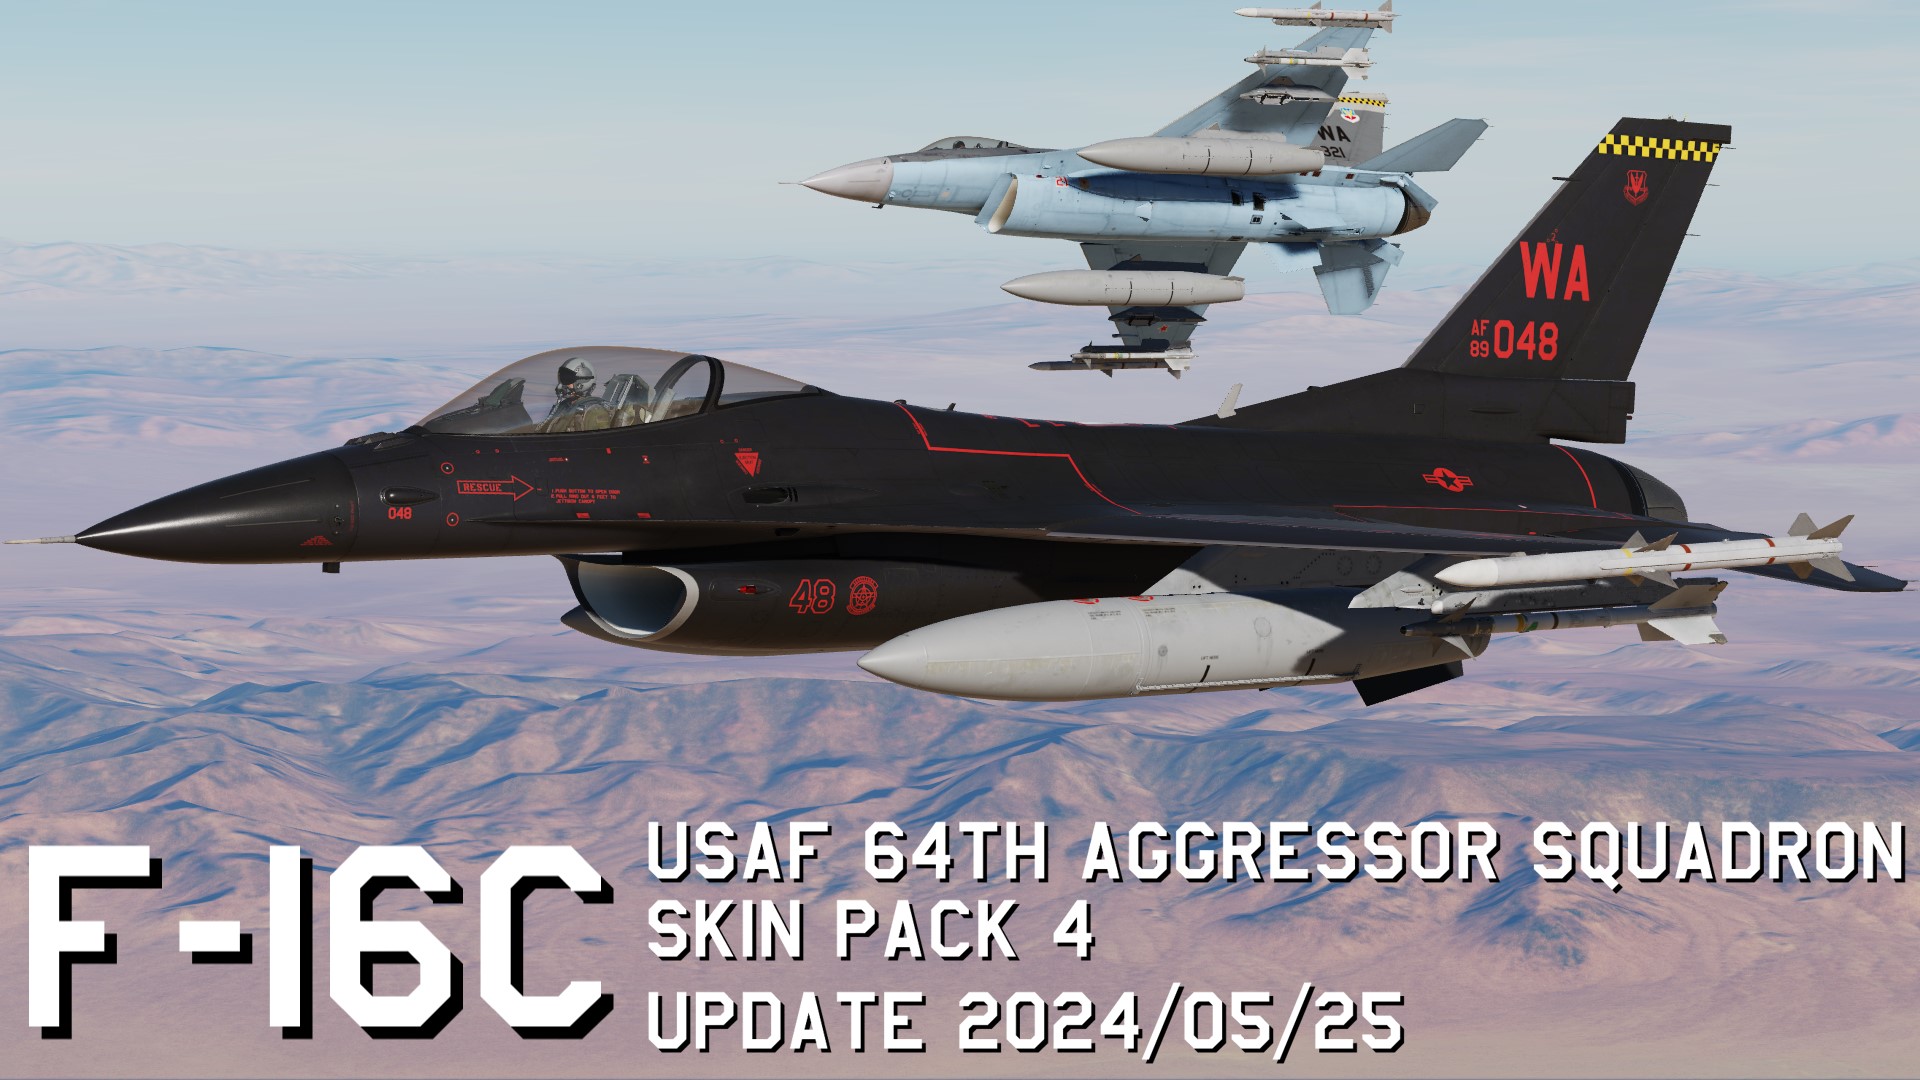 F-16C USAF 64th Aggressor Squadron Skin Pack 4 update 2024/05/25